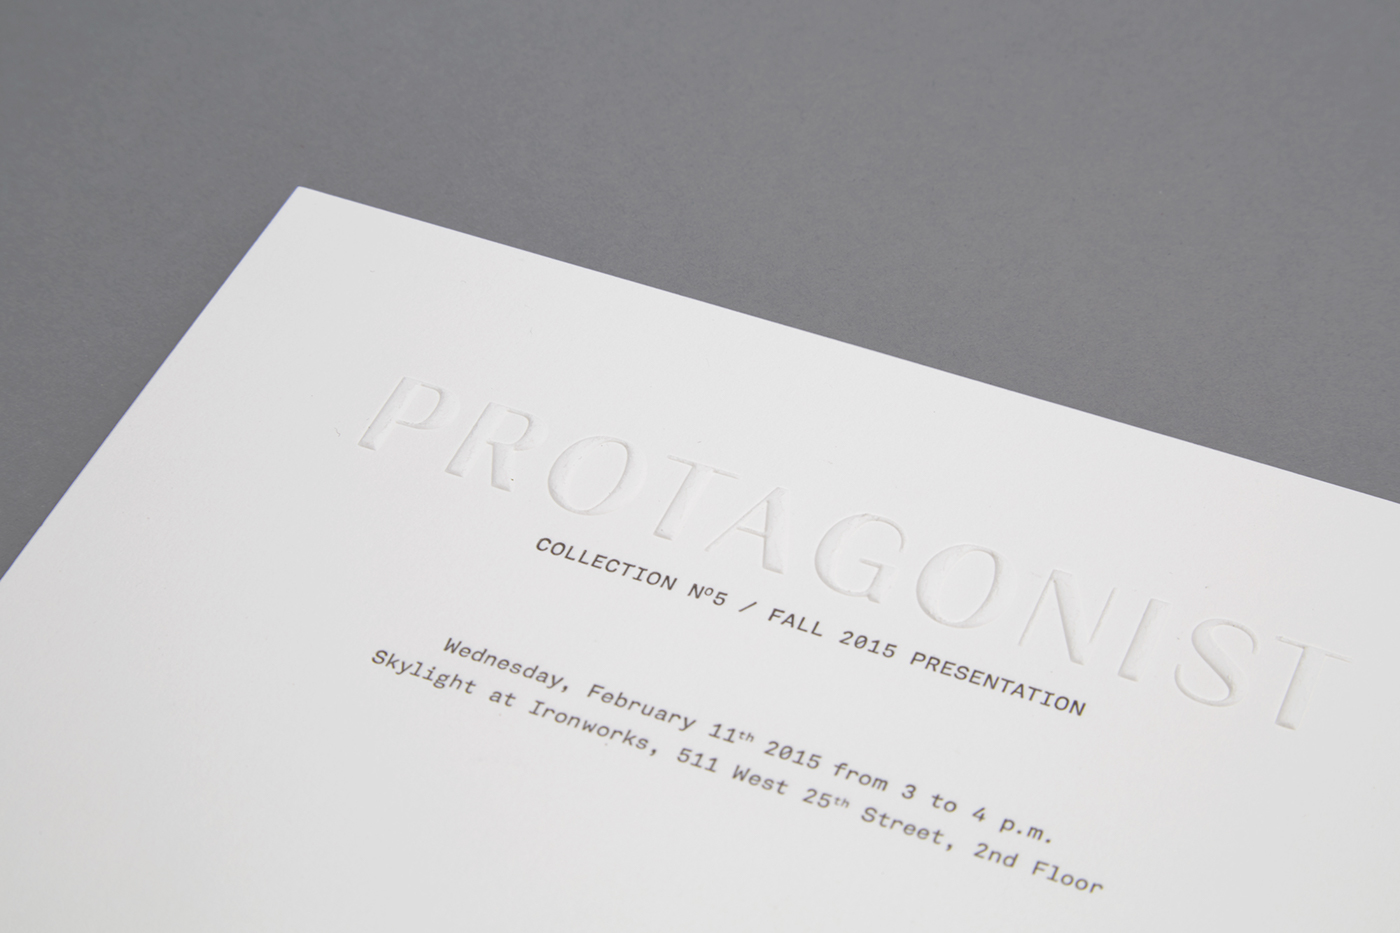 Invitation invite Vip Fall15 protagonist Collection